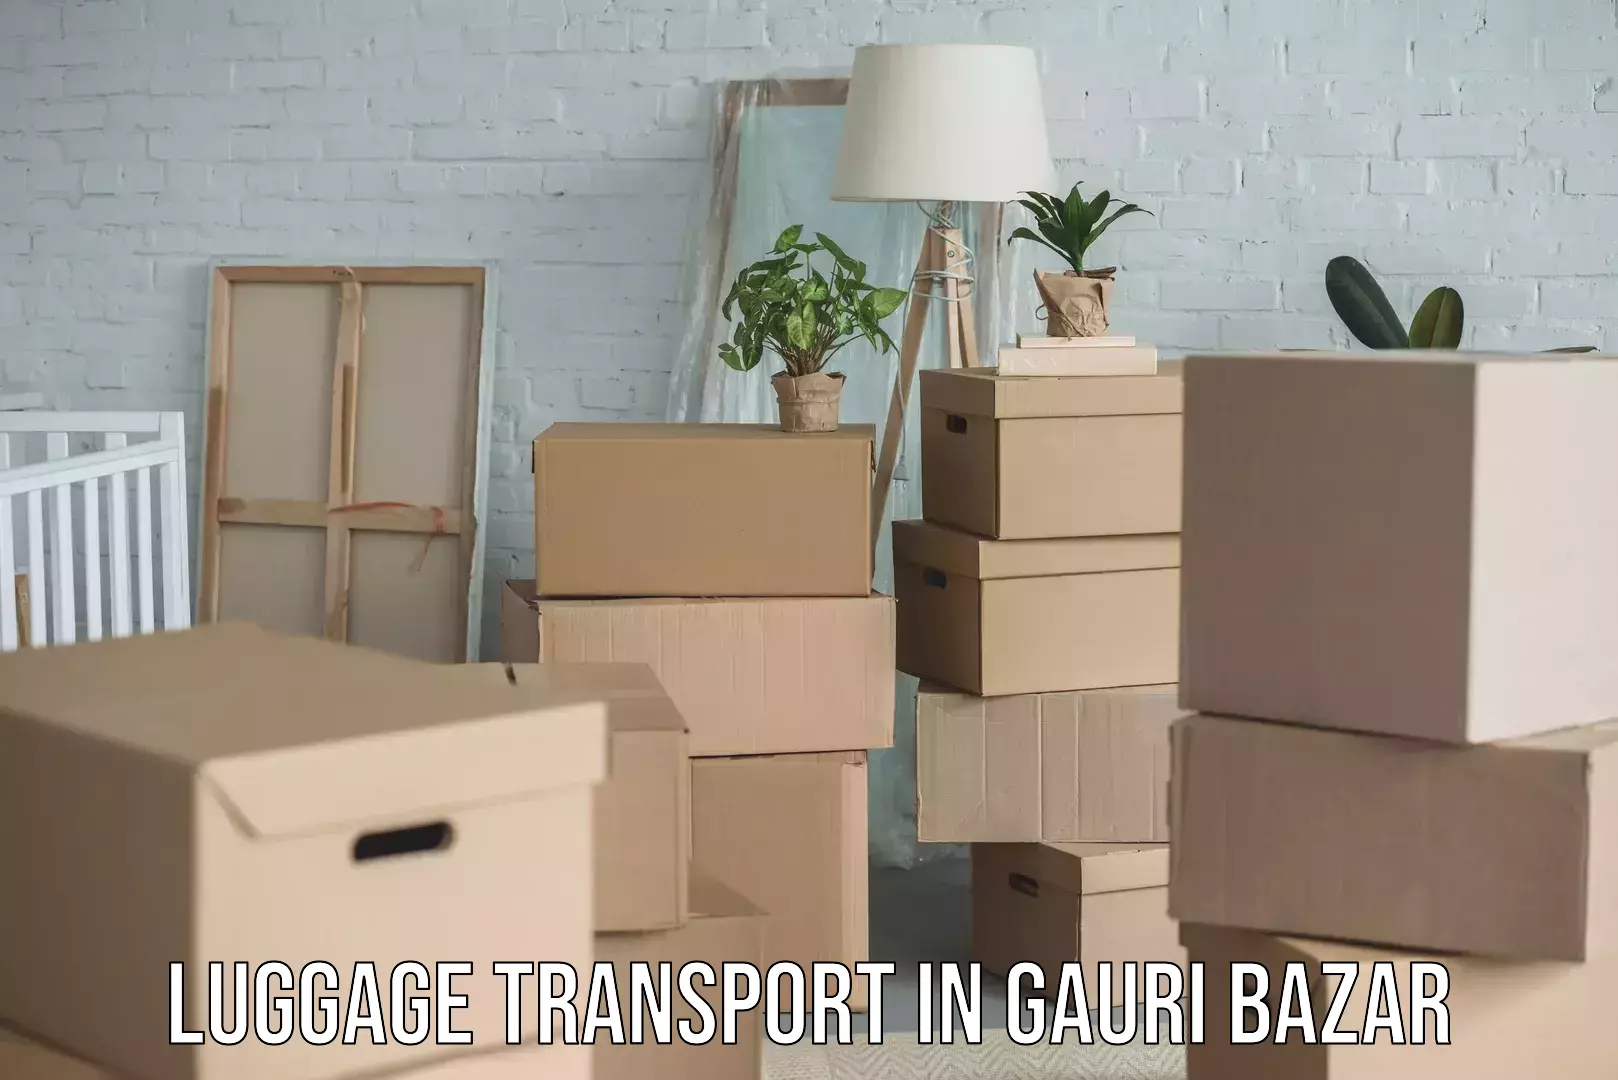 Baggage transport technology in Gauri Bazar